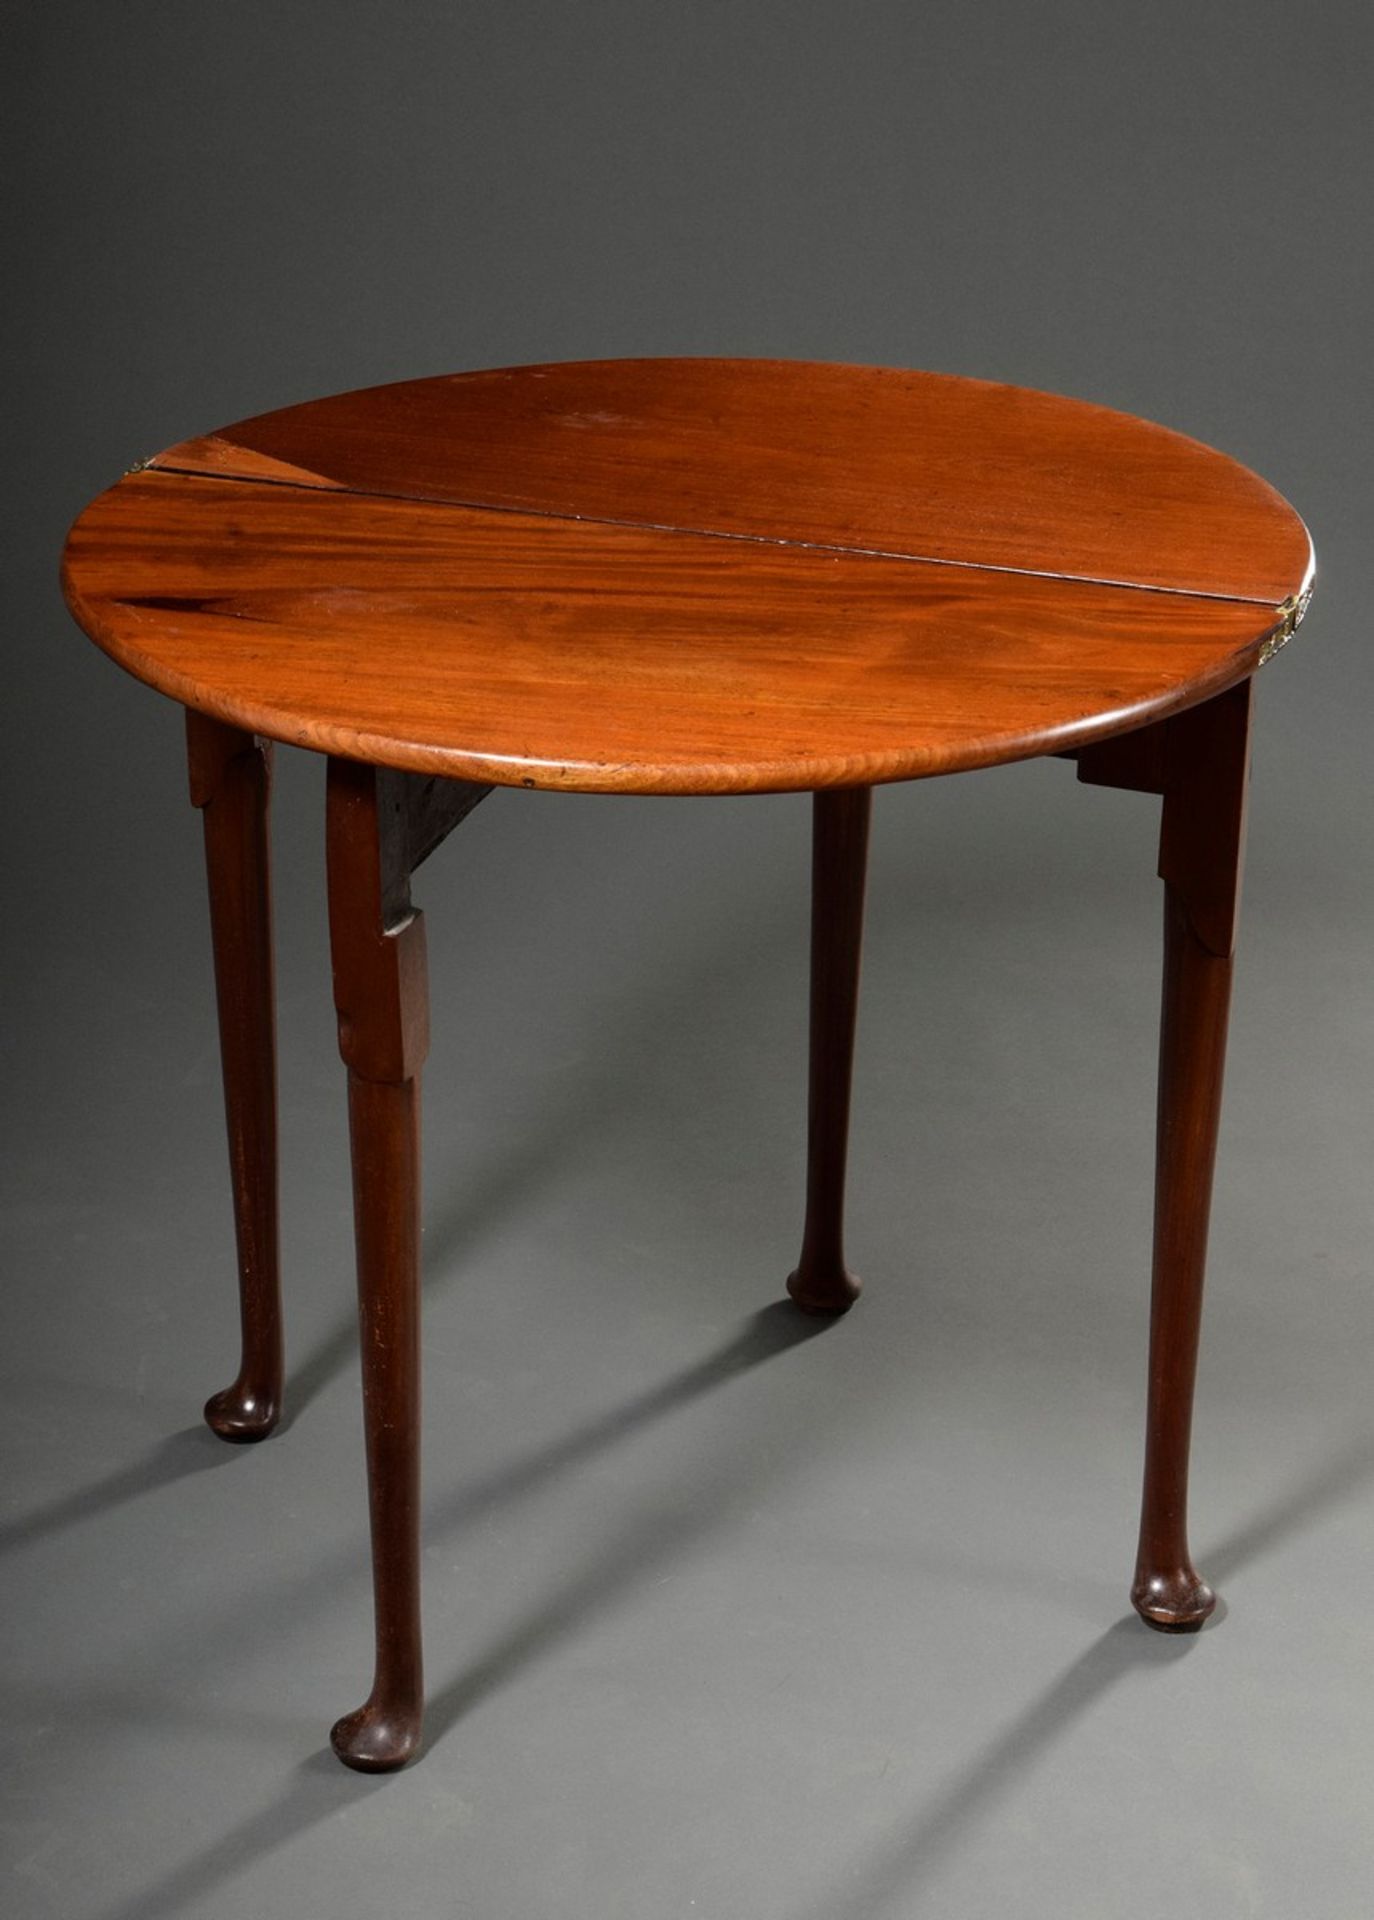 Englischer Mahagoni Spieltisch auf Patfeet, klappbar, um 1800, 70x37/74x76cm - Image 3 of 4